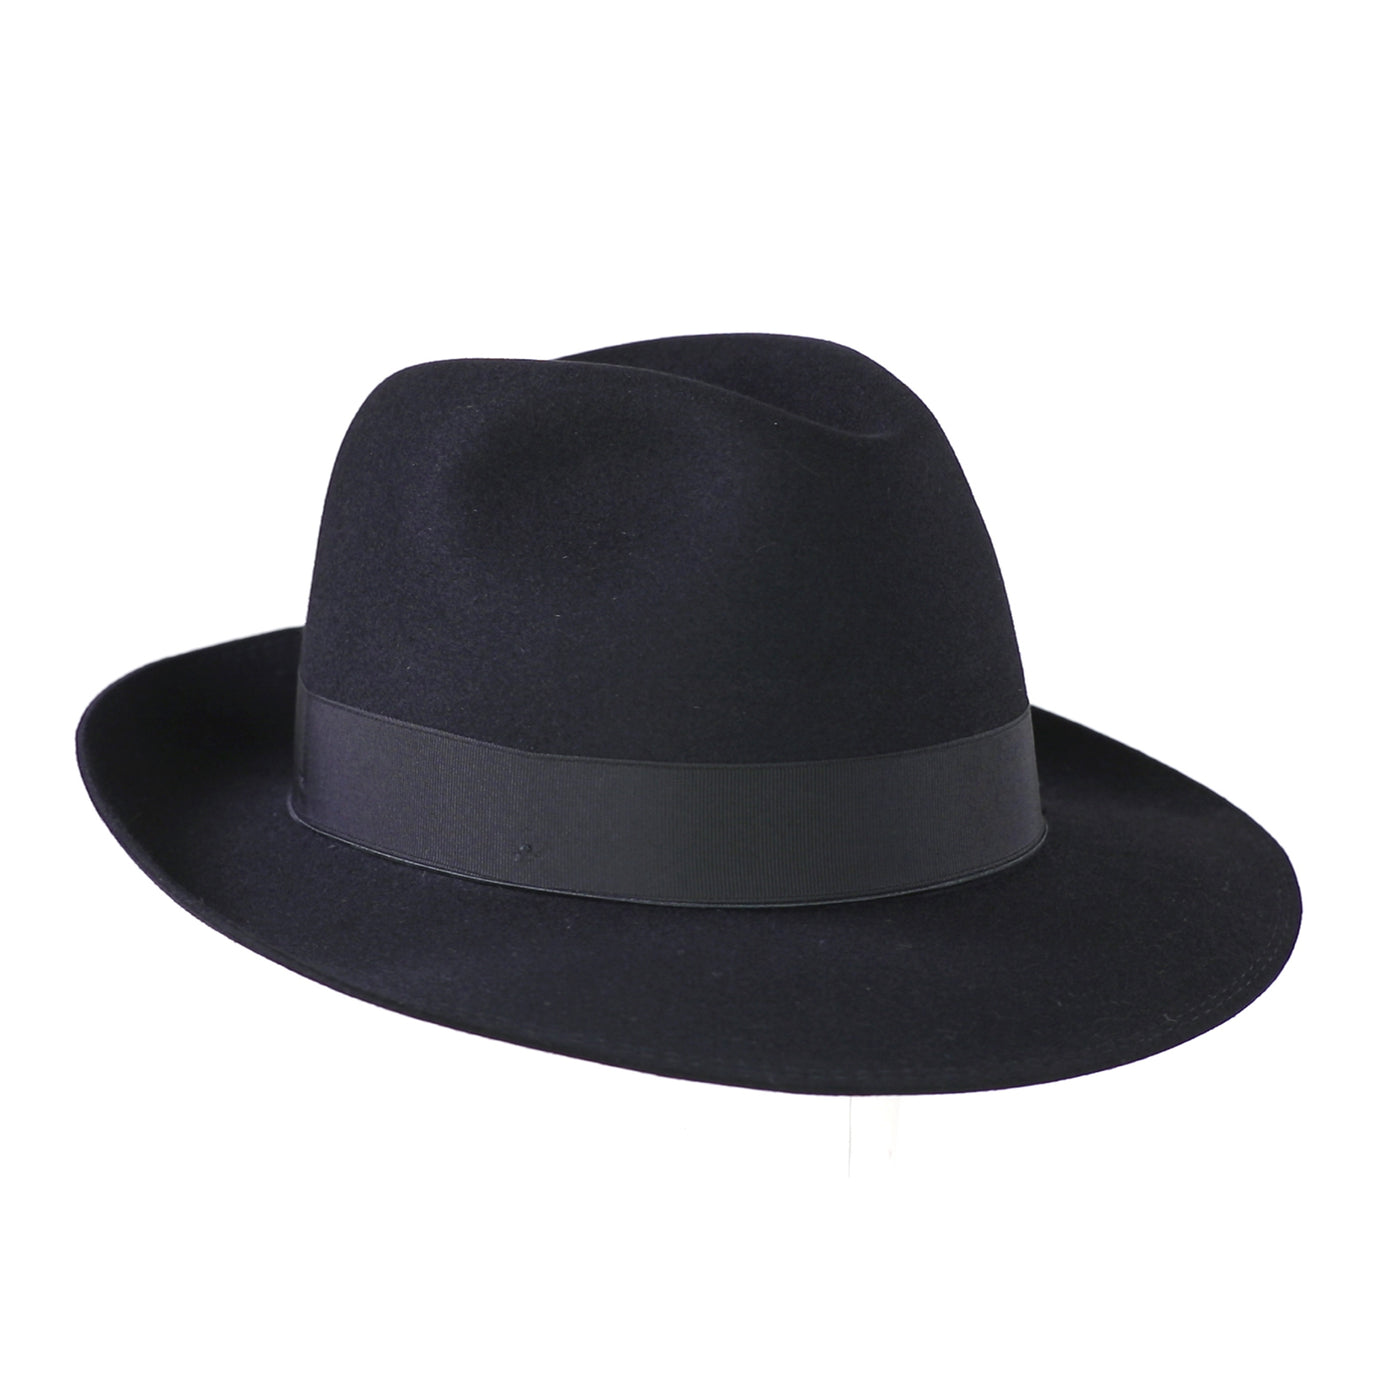 Torino 29, product_type] - Borsalino for Atica fedora hat